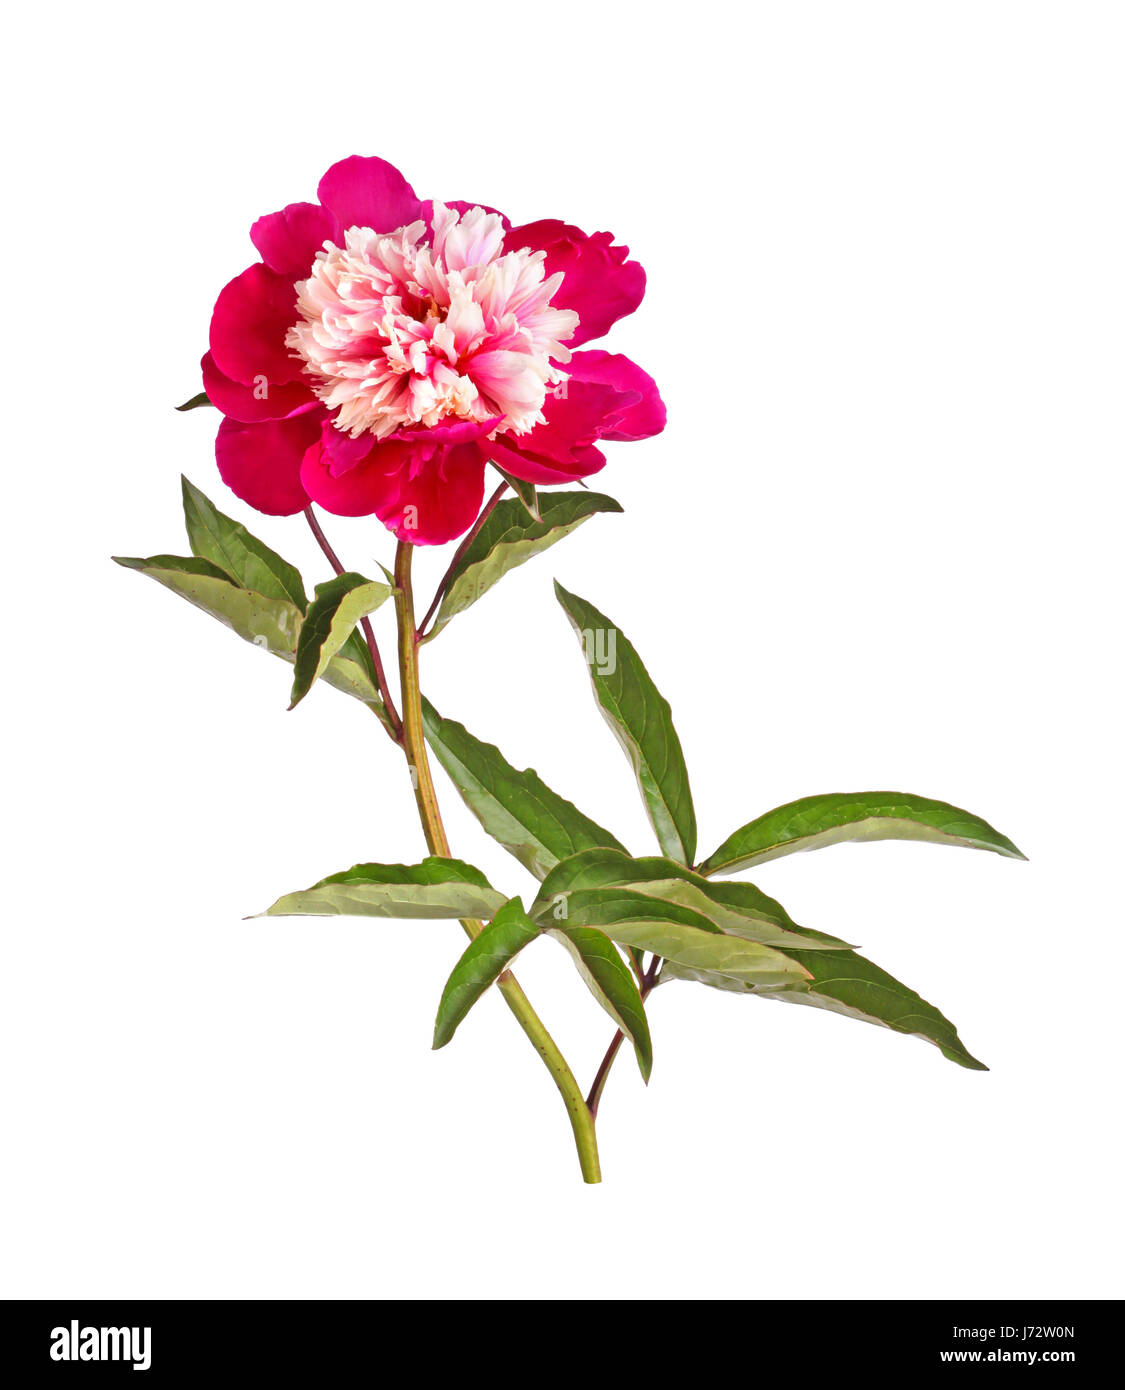 Eine doppelte Anemone-Form Blume, Stengel und Blätter eine rote und Weiße Pfingstrose (Paeonia Lactiflora) Sorte vor einem weißen Hintergrund isoliert Stockfoto